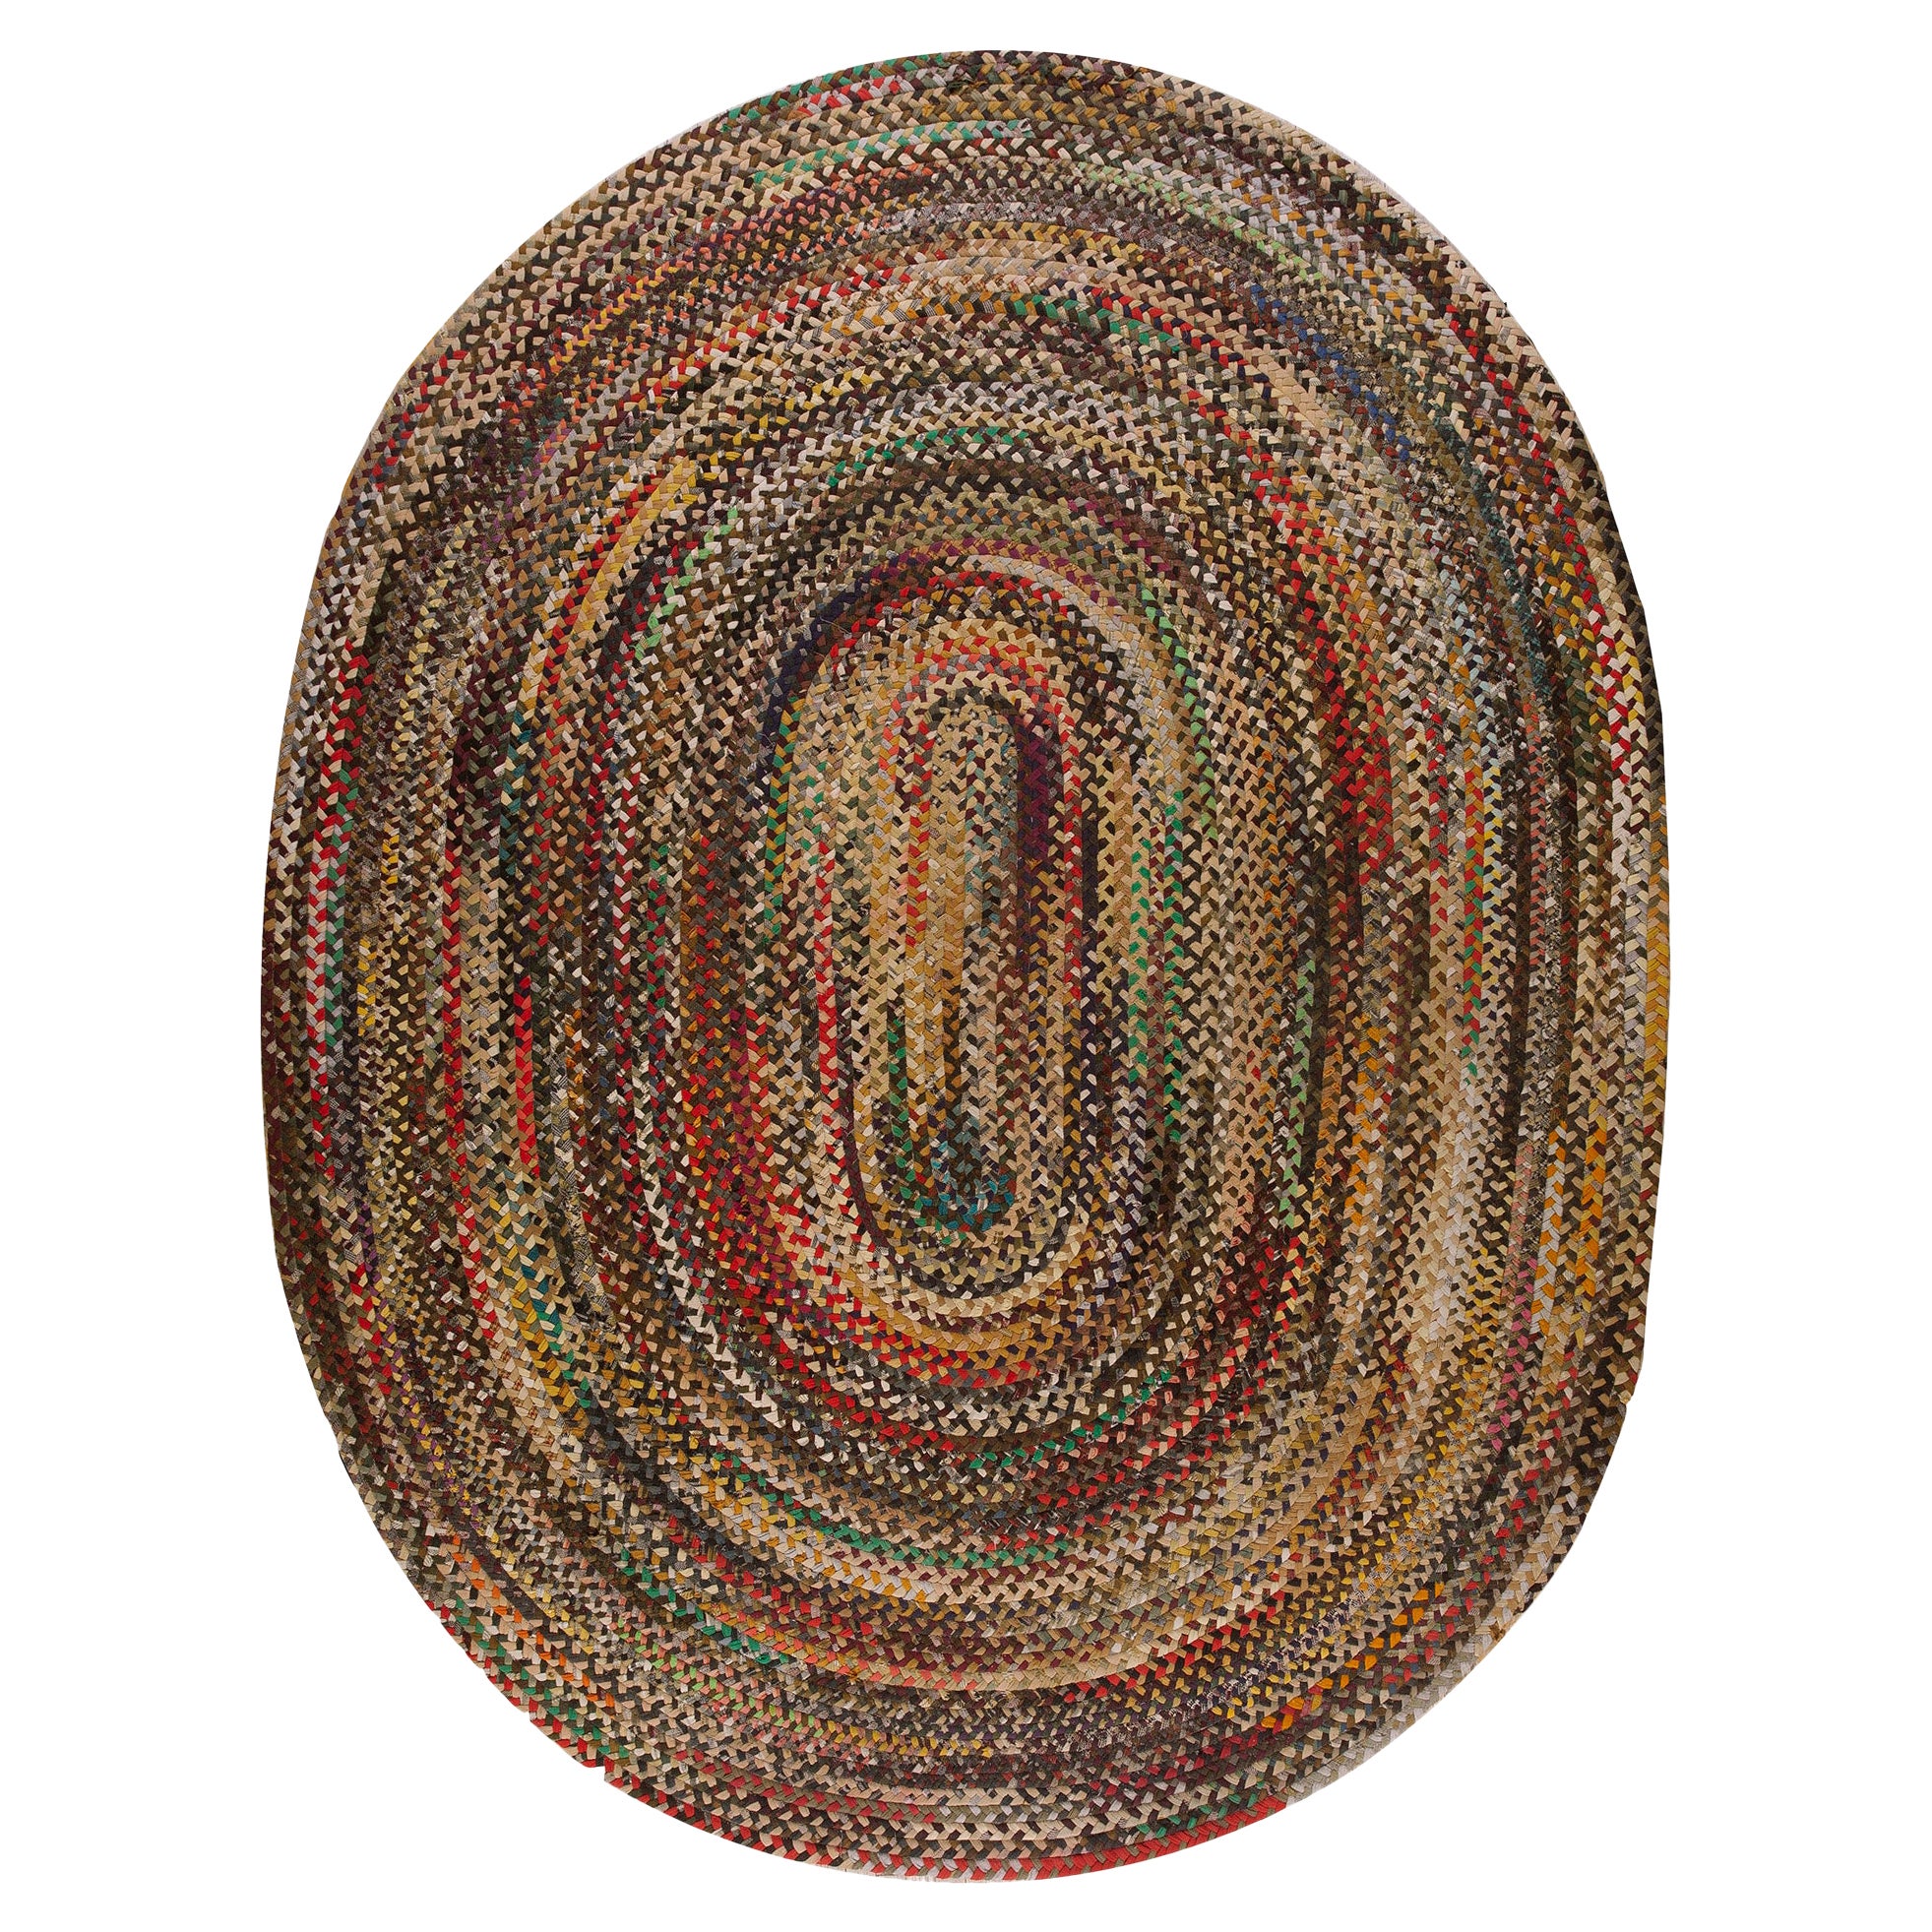 Amerikanischer geflochtener Teppich aus den 1940er Jahren ( 9' x 11' 6"" - 275 x 350 cm)